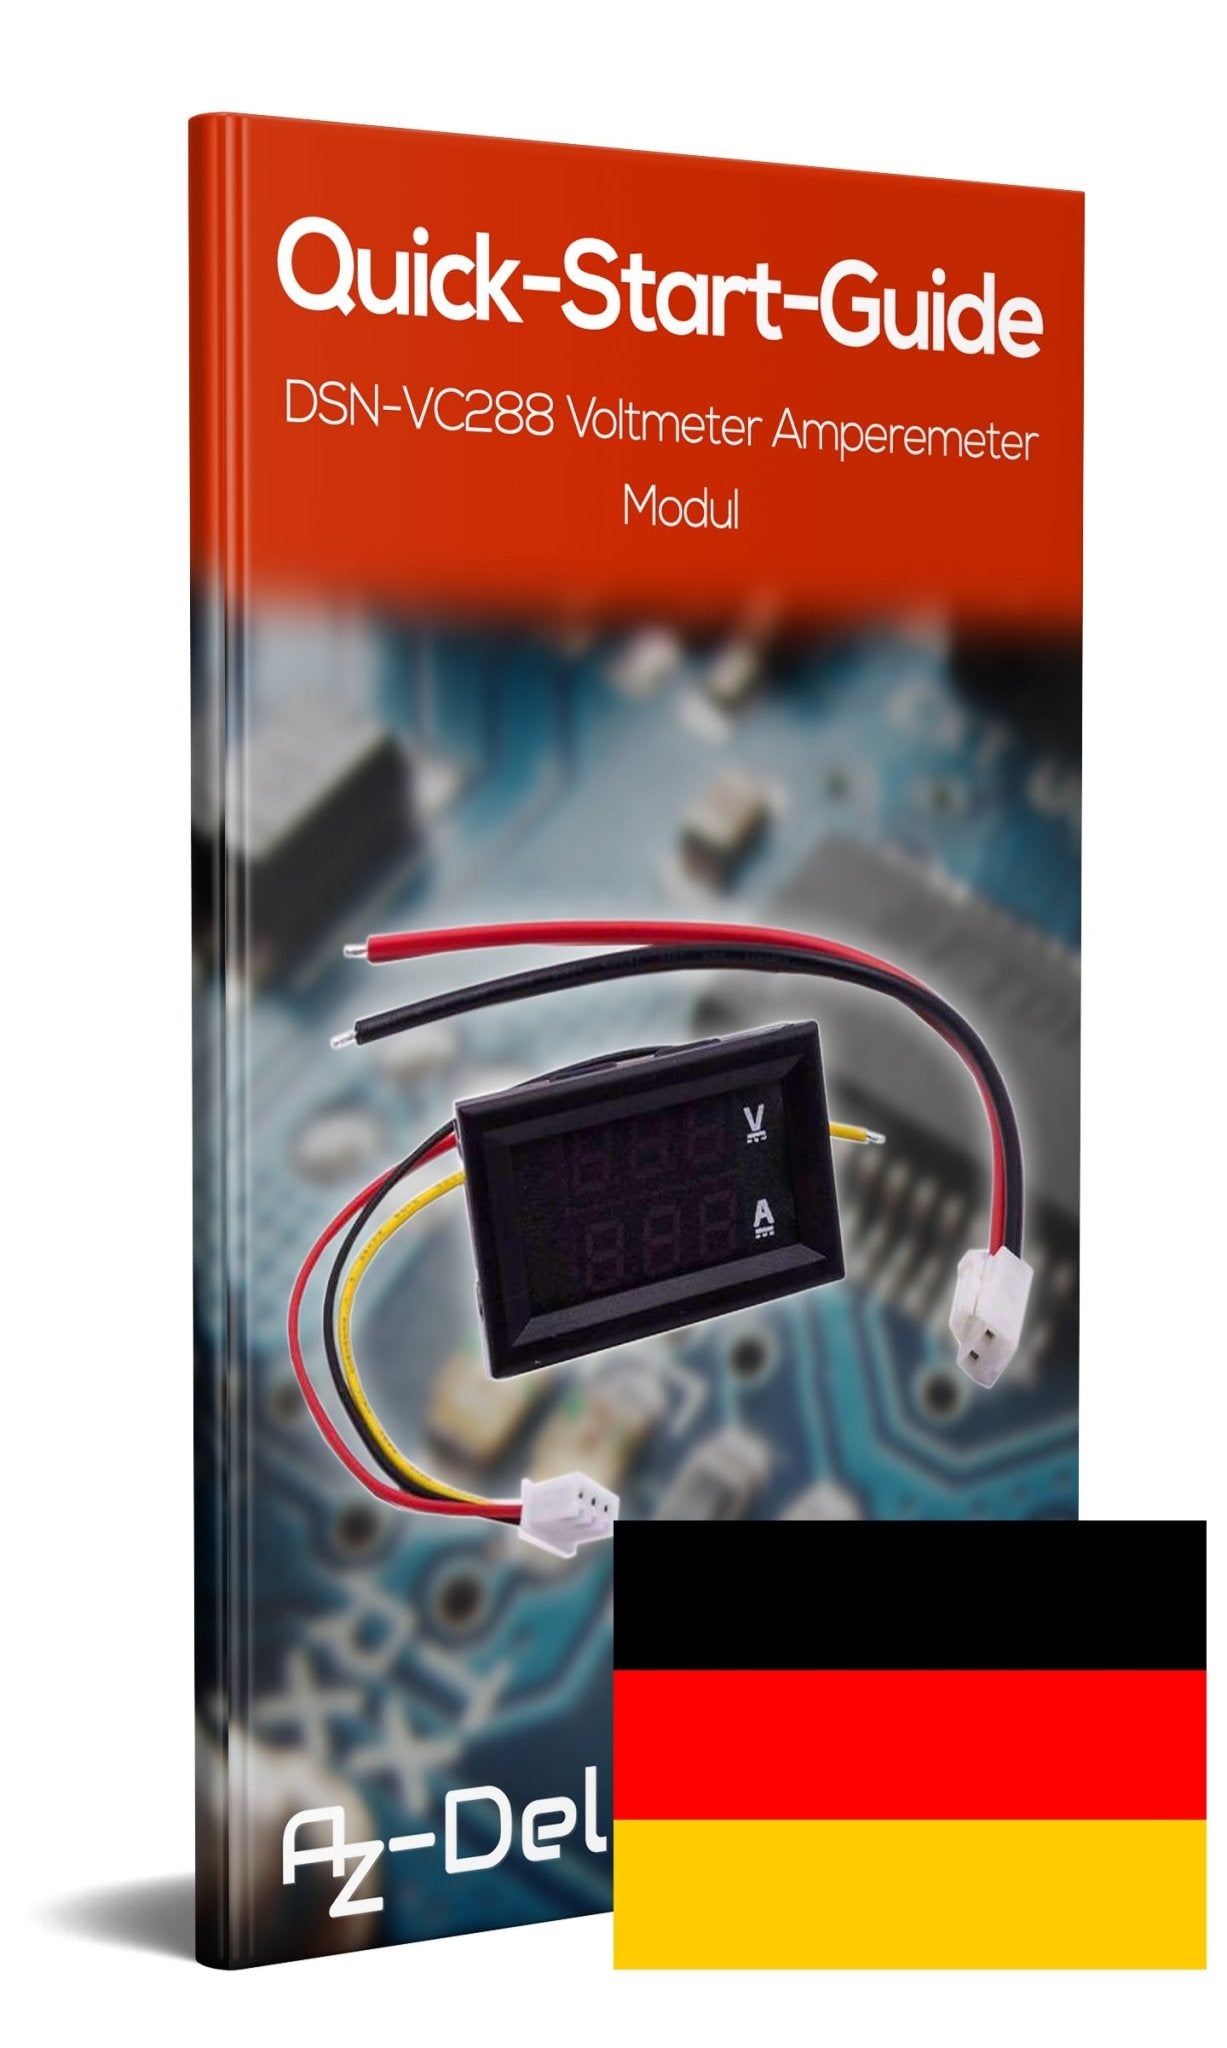 DSN-VC288 Voltmeter Amperemeter Modul mit LED Display für Raspberry Pi - AZ-Delivery